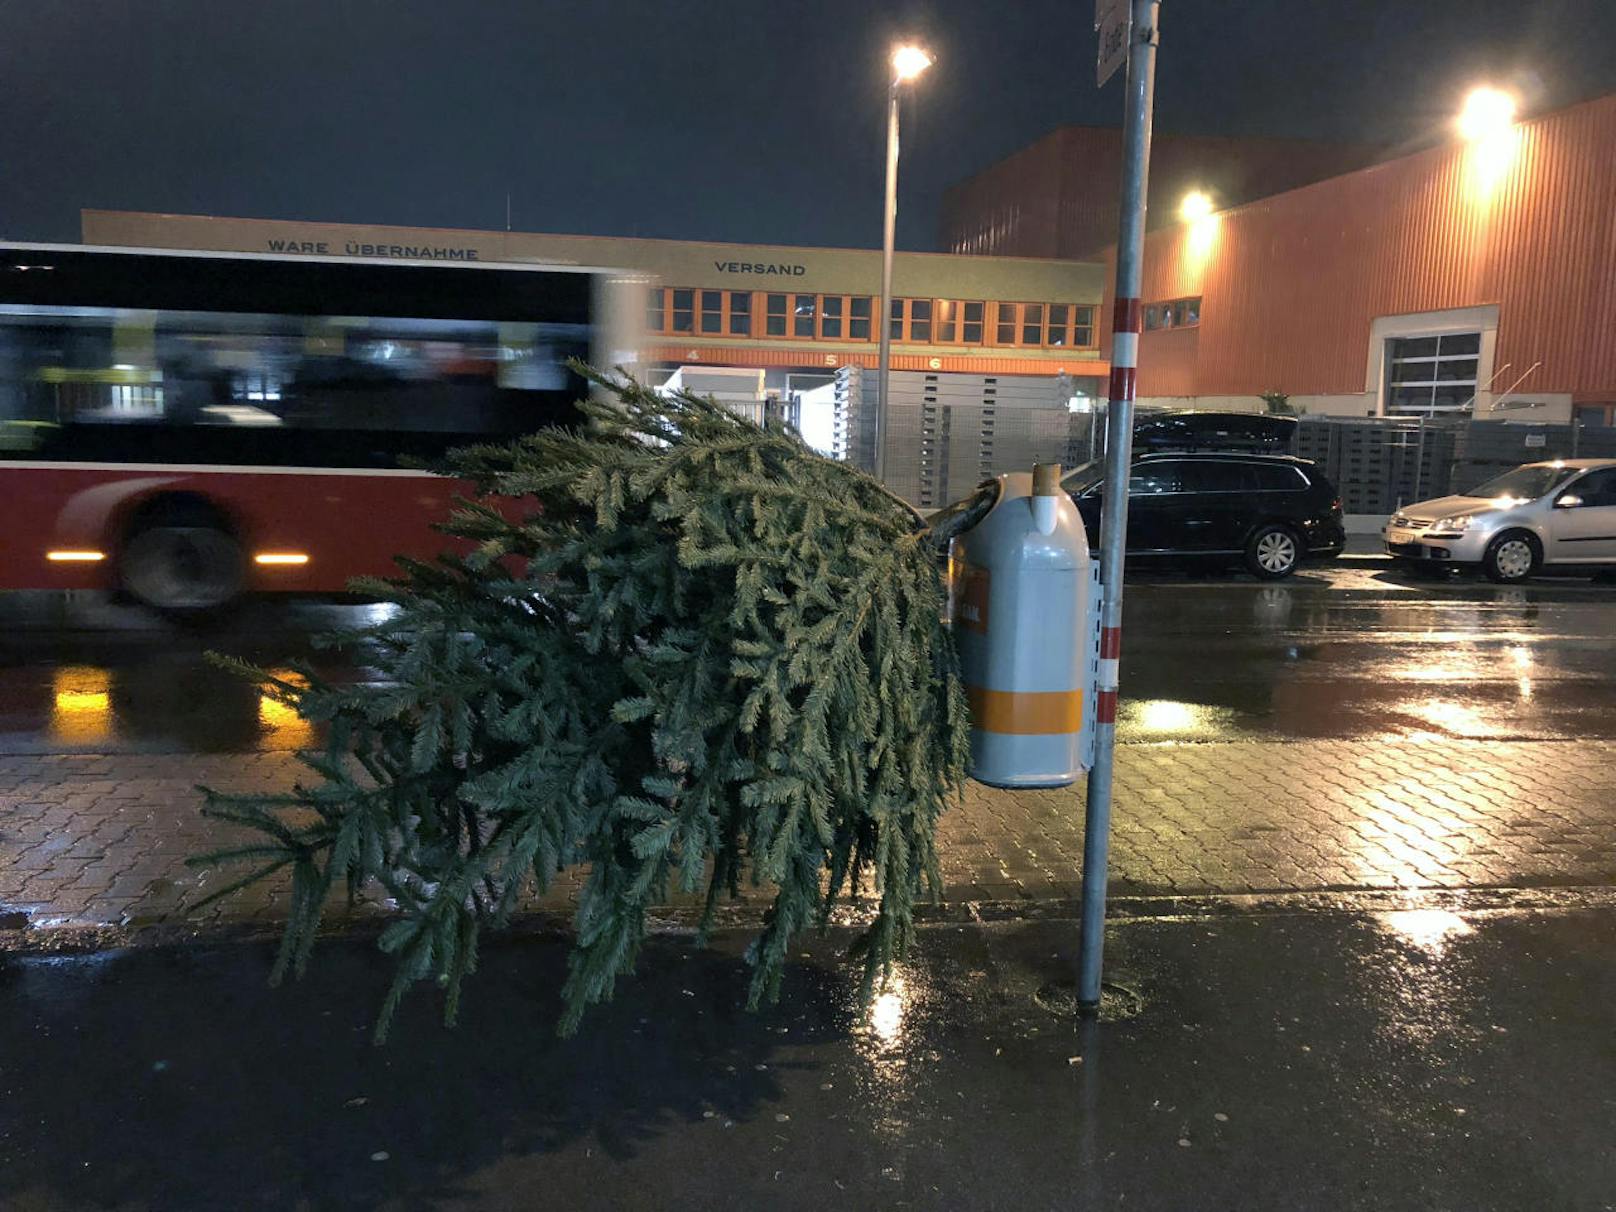 Gesehen in Wien-Simmering. Ein Unbekannter entsorgte seinen Christbaum kurzerhand auf offener Straße.